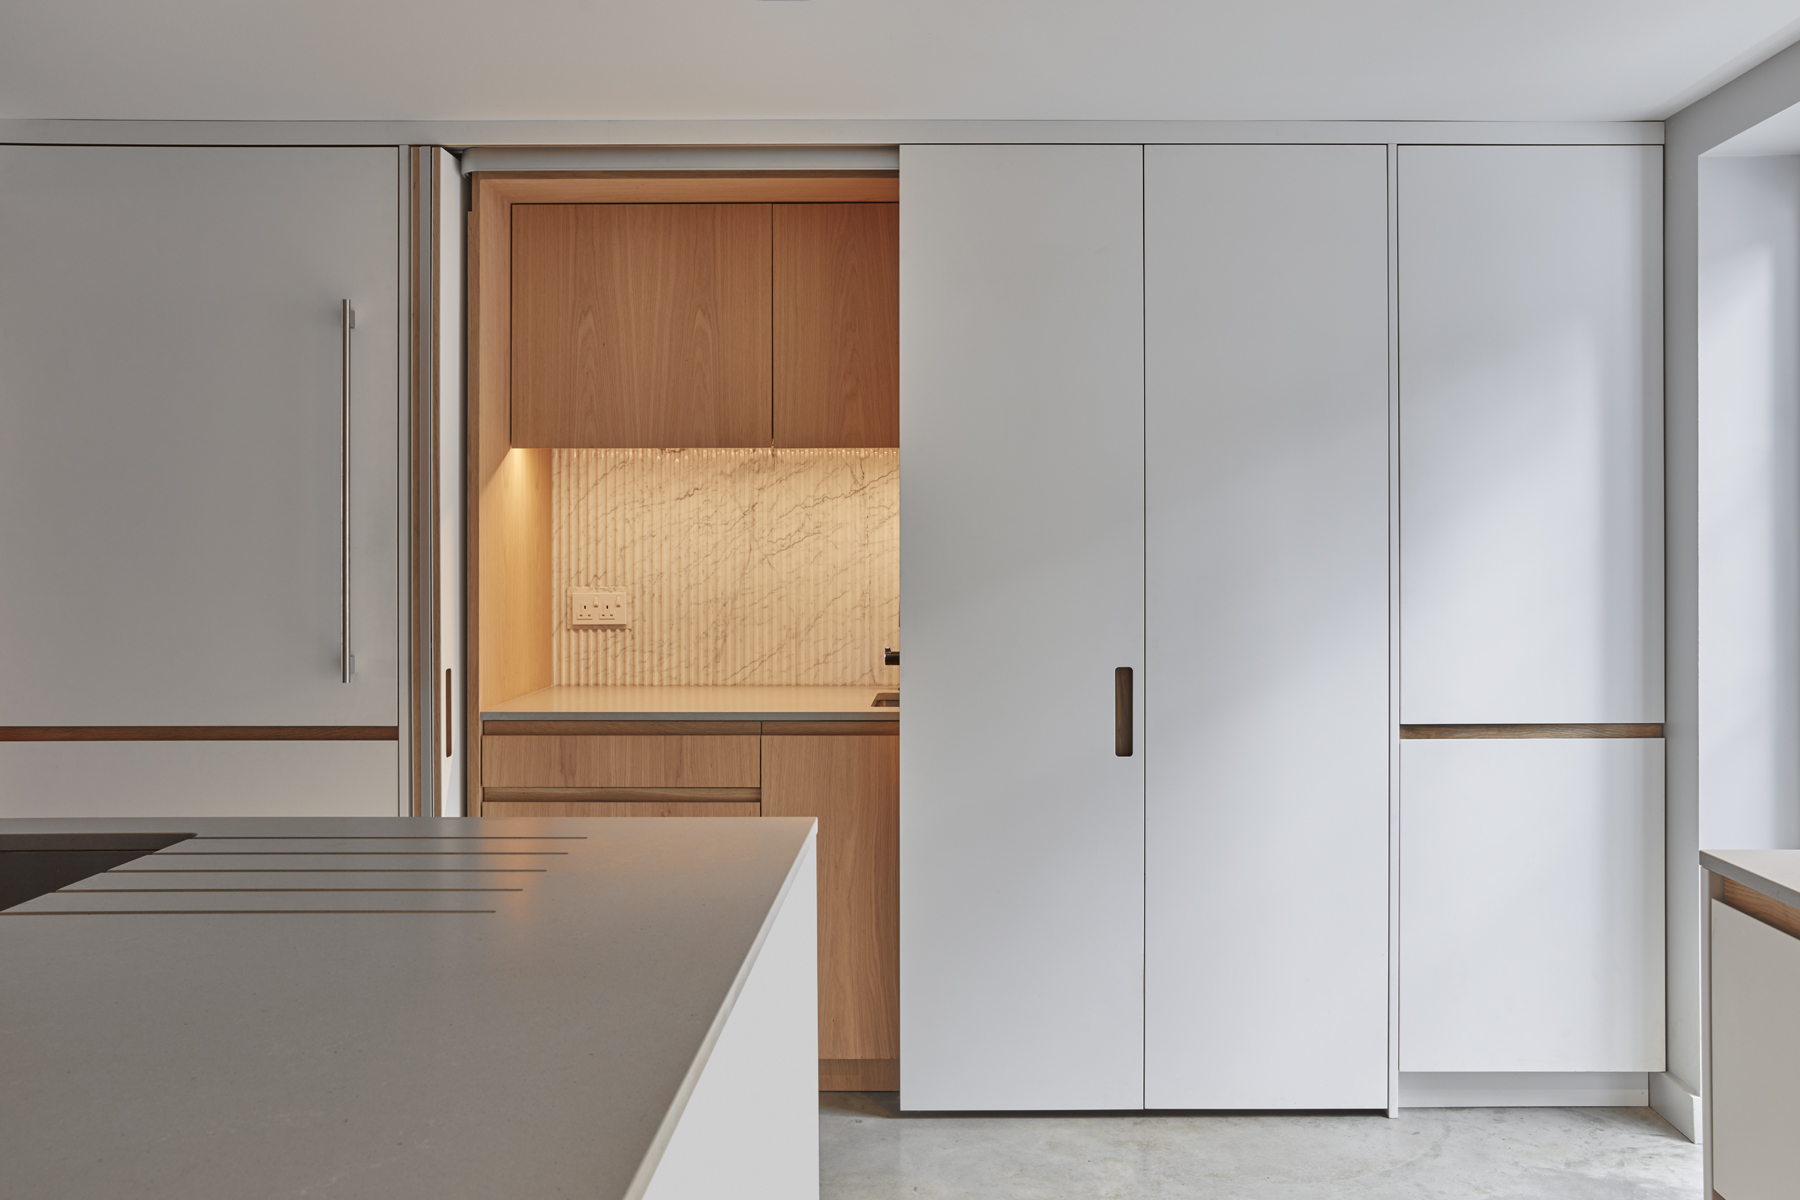 Evoke Projects Ltd Bespoke Kitchen hidden behind folding doors